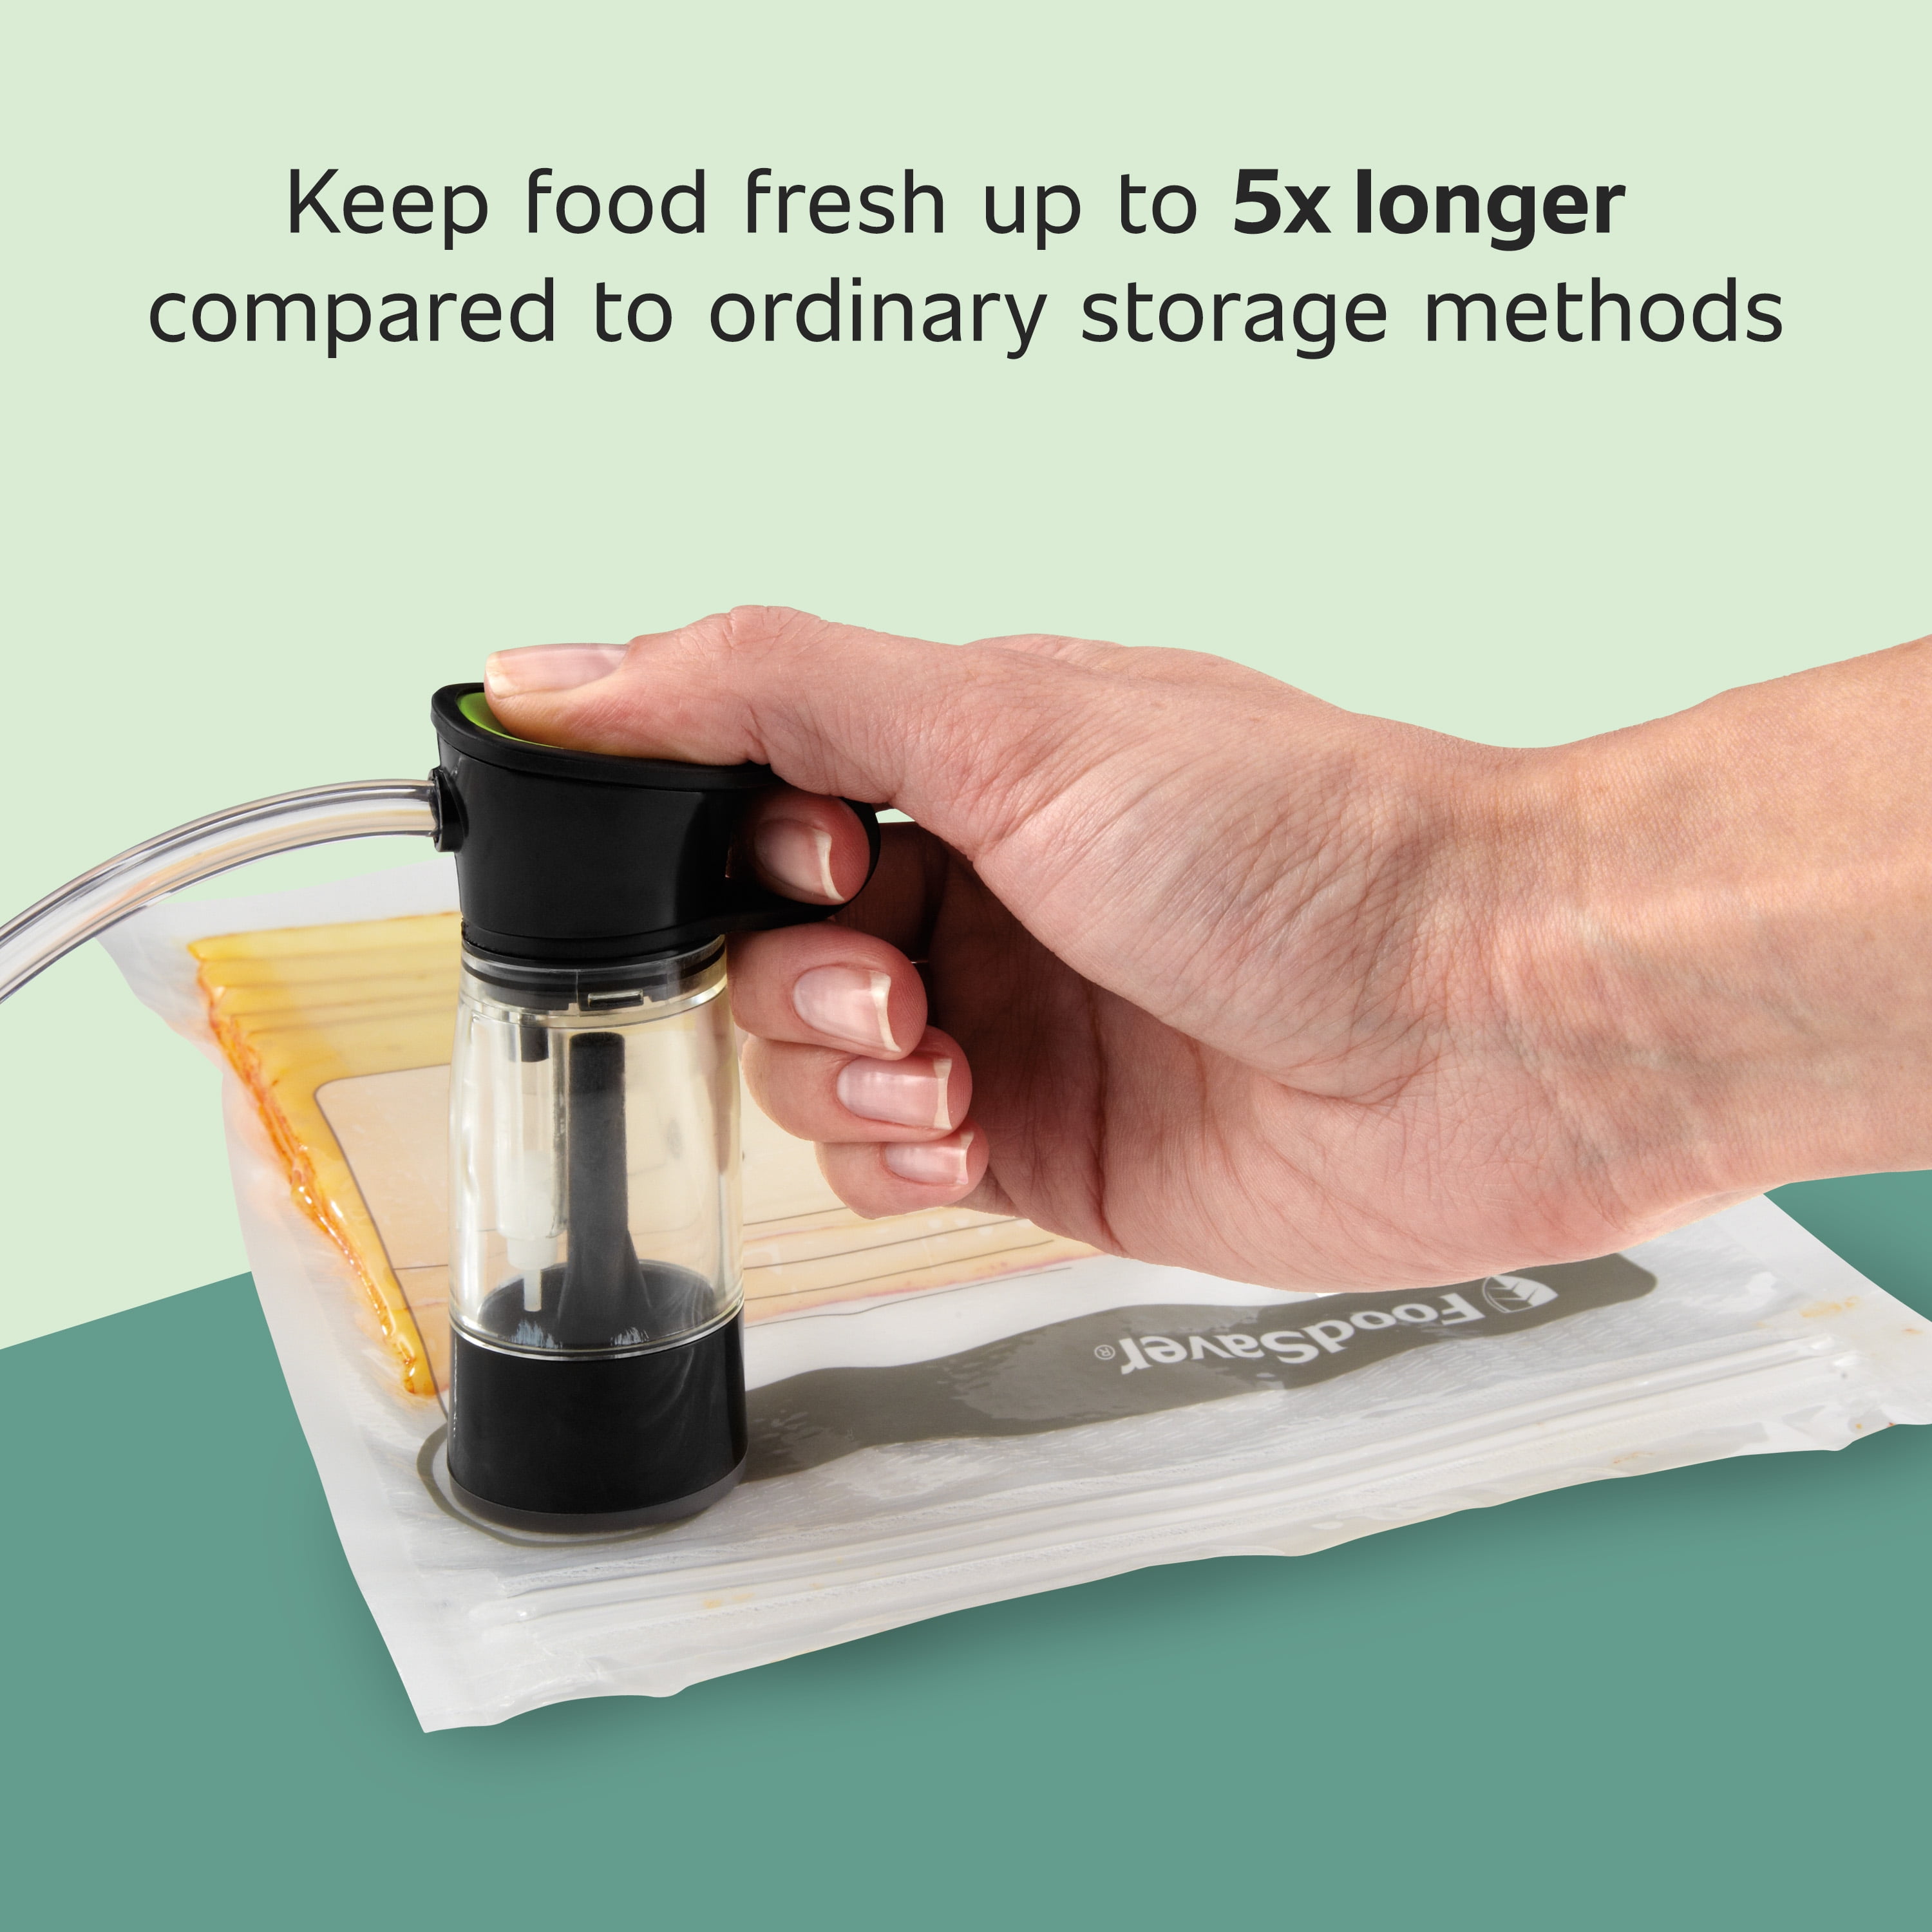 100-500 Vacuum Sealer Bags Quart Food Vac Storage for Food Saver, Seal a  Meal US